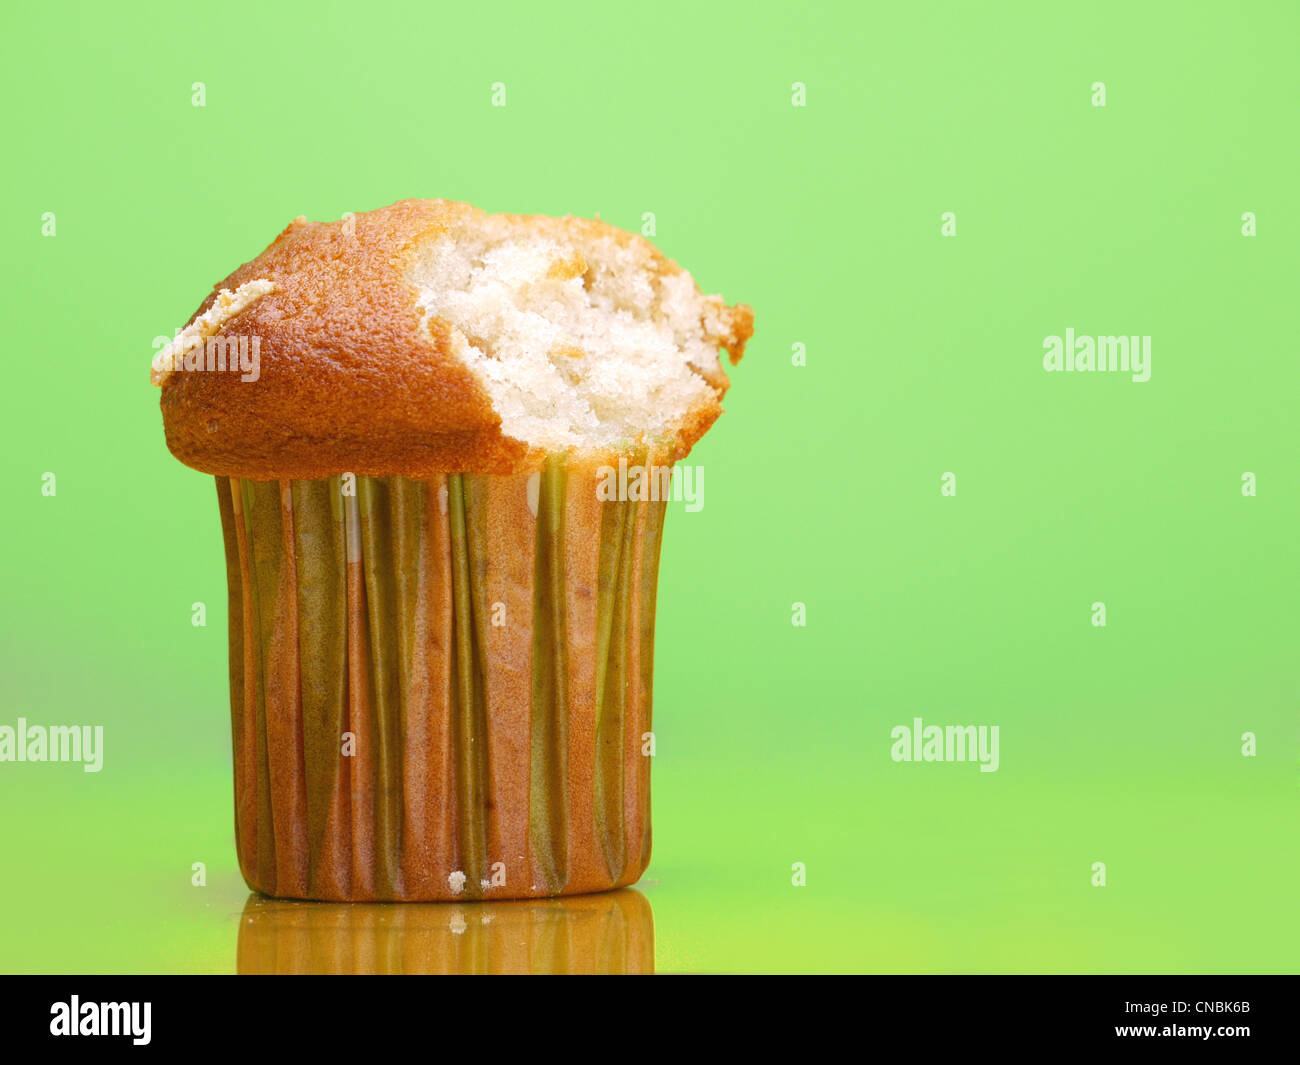 Delicioso cupcake con mordida tomado shot sobre fondo verde claro Foto de stock